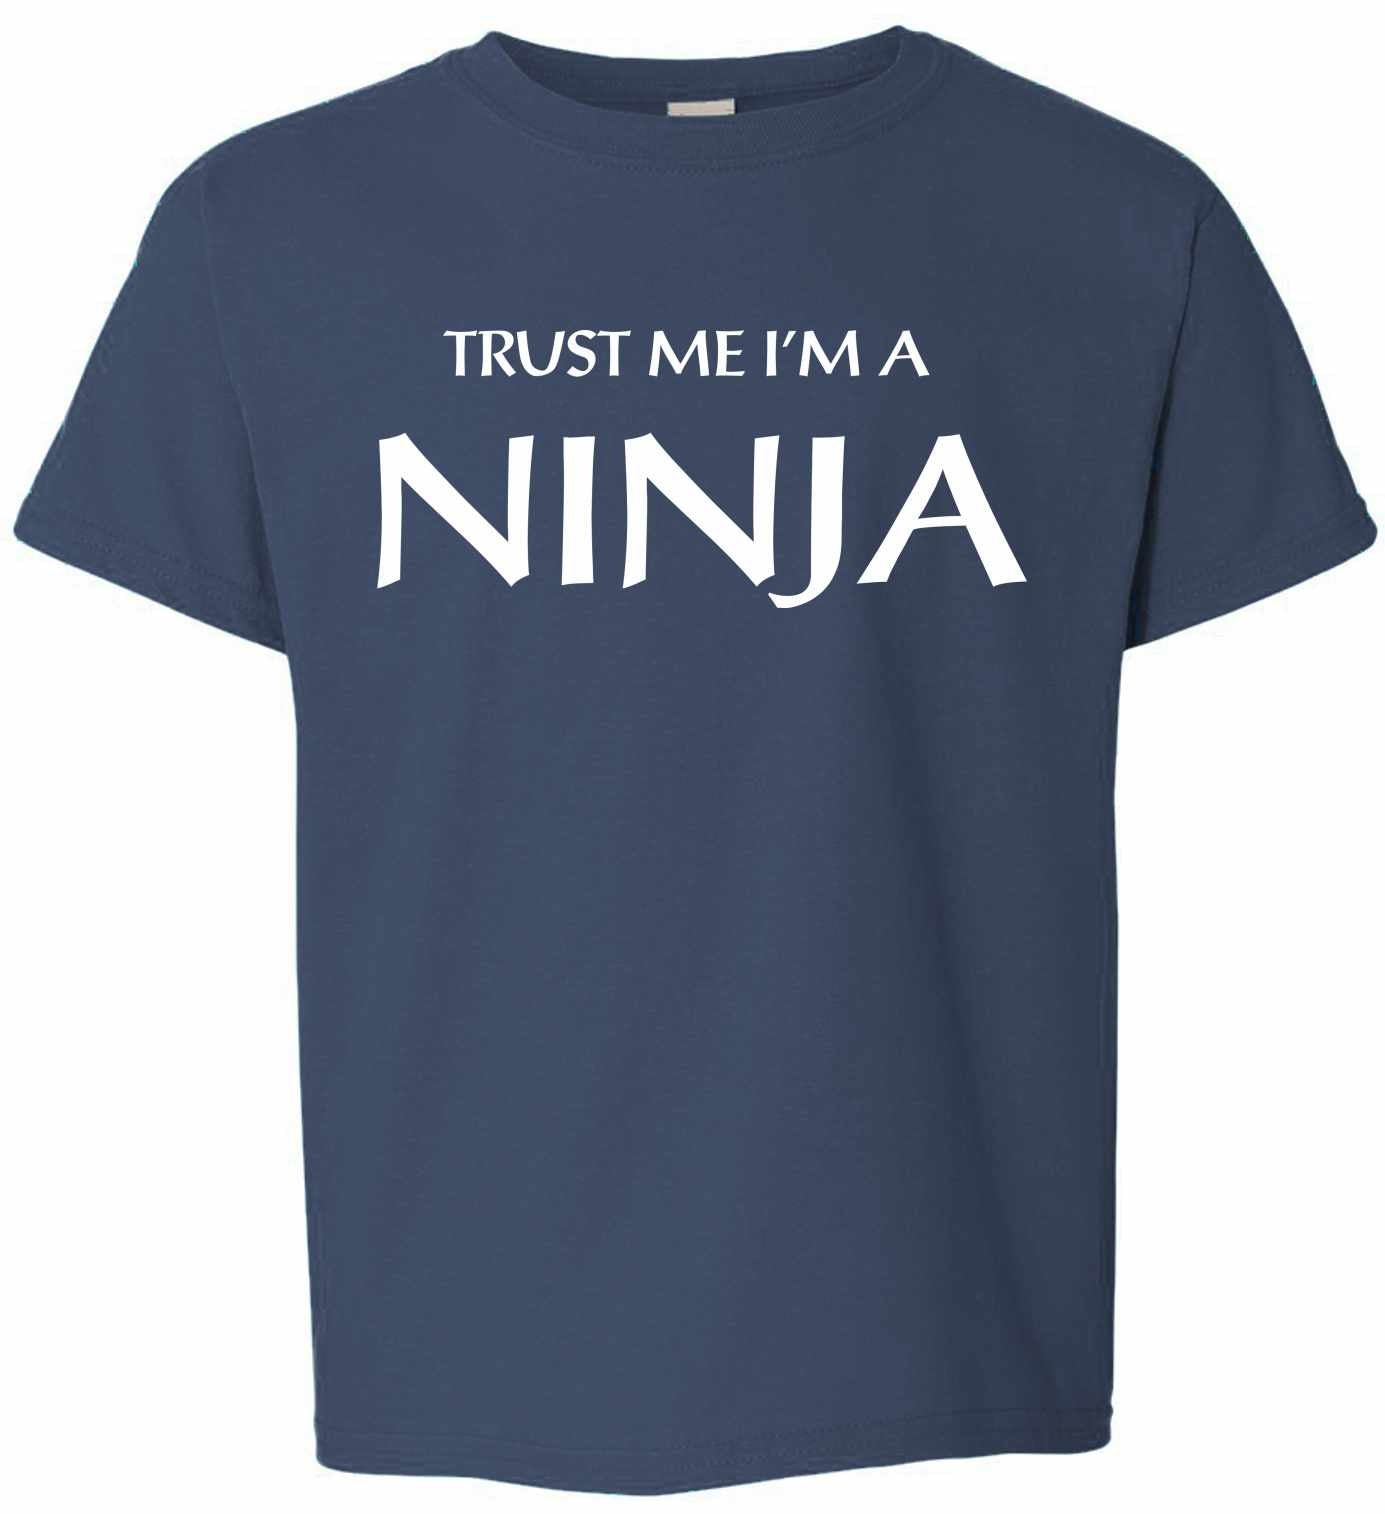 Trust Me I'm a NINJA on Kids T-Shirt (#774-201)